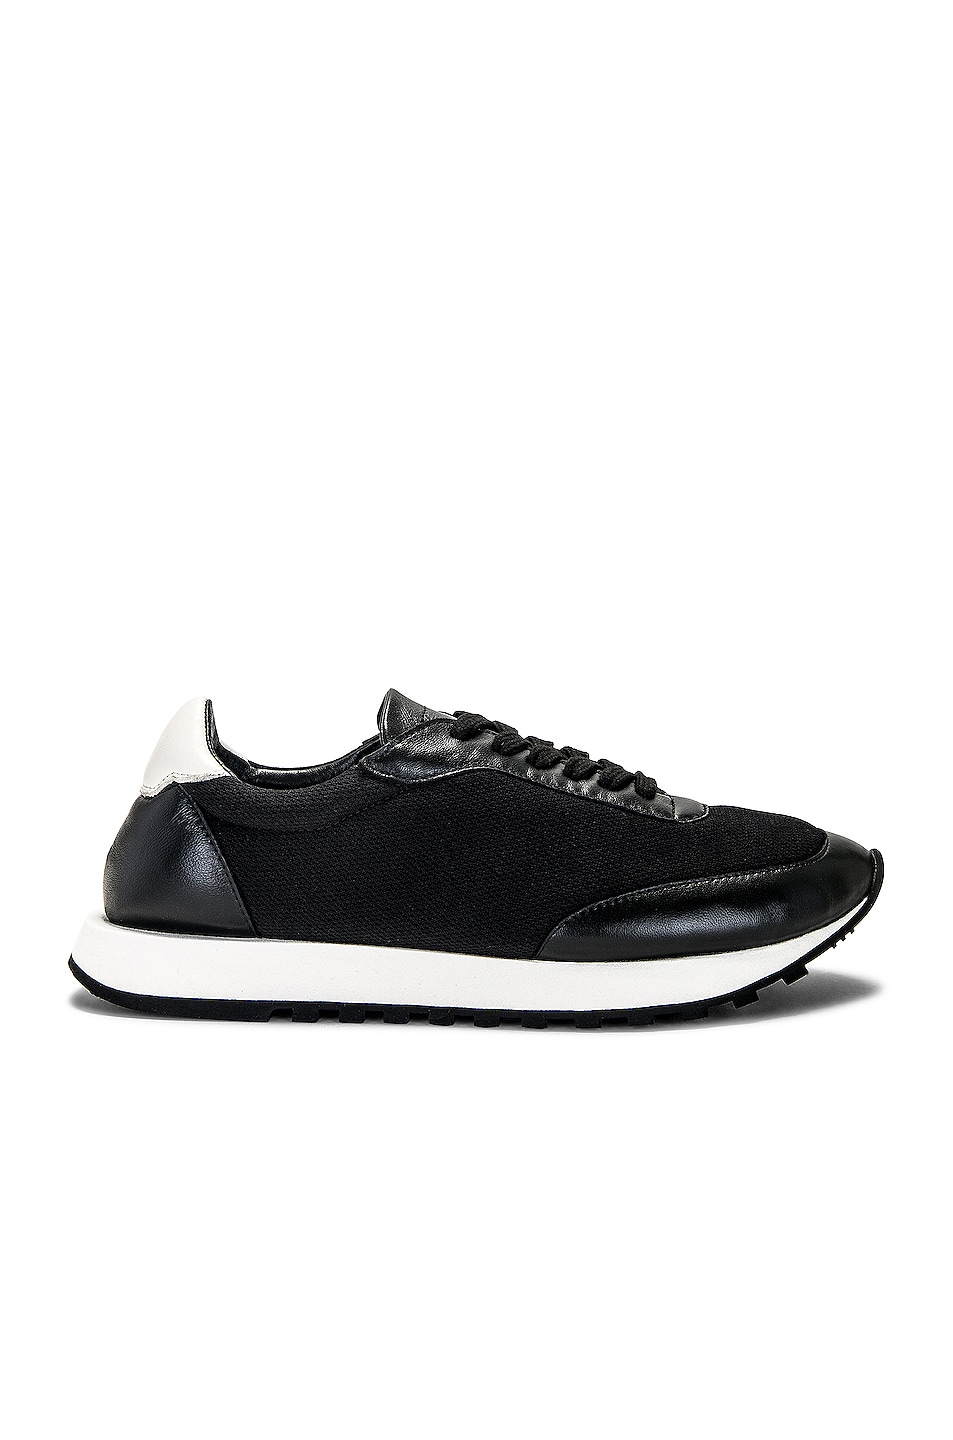 Image 1 of The Row Owen Runner Sneaker in Black/White/Black